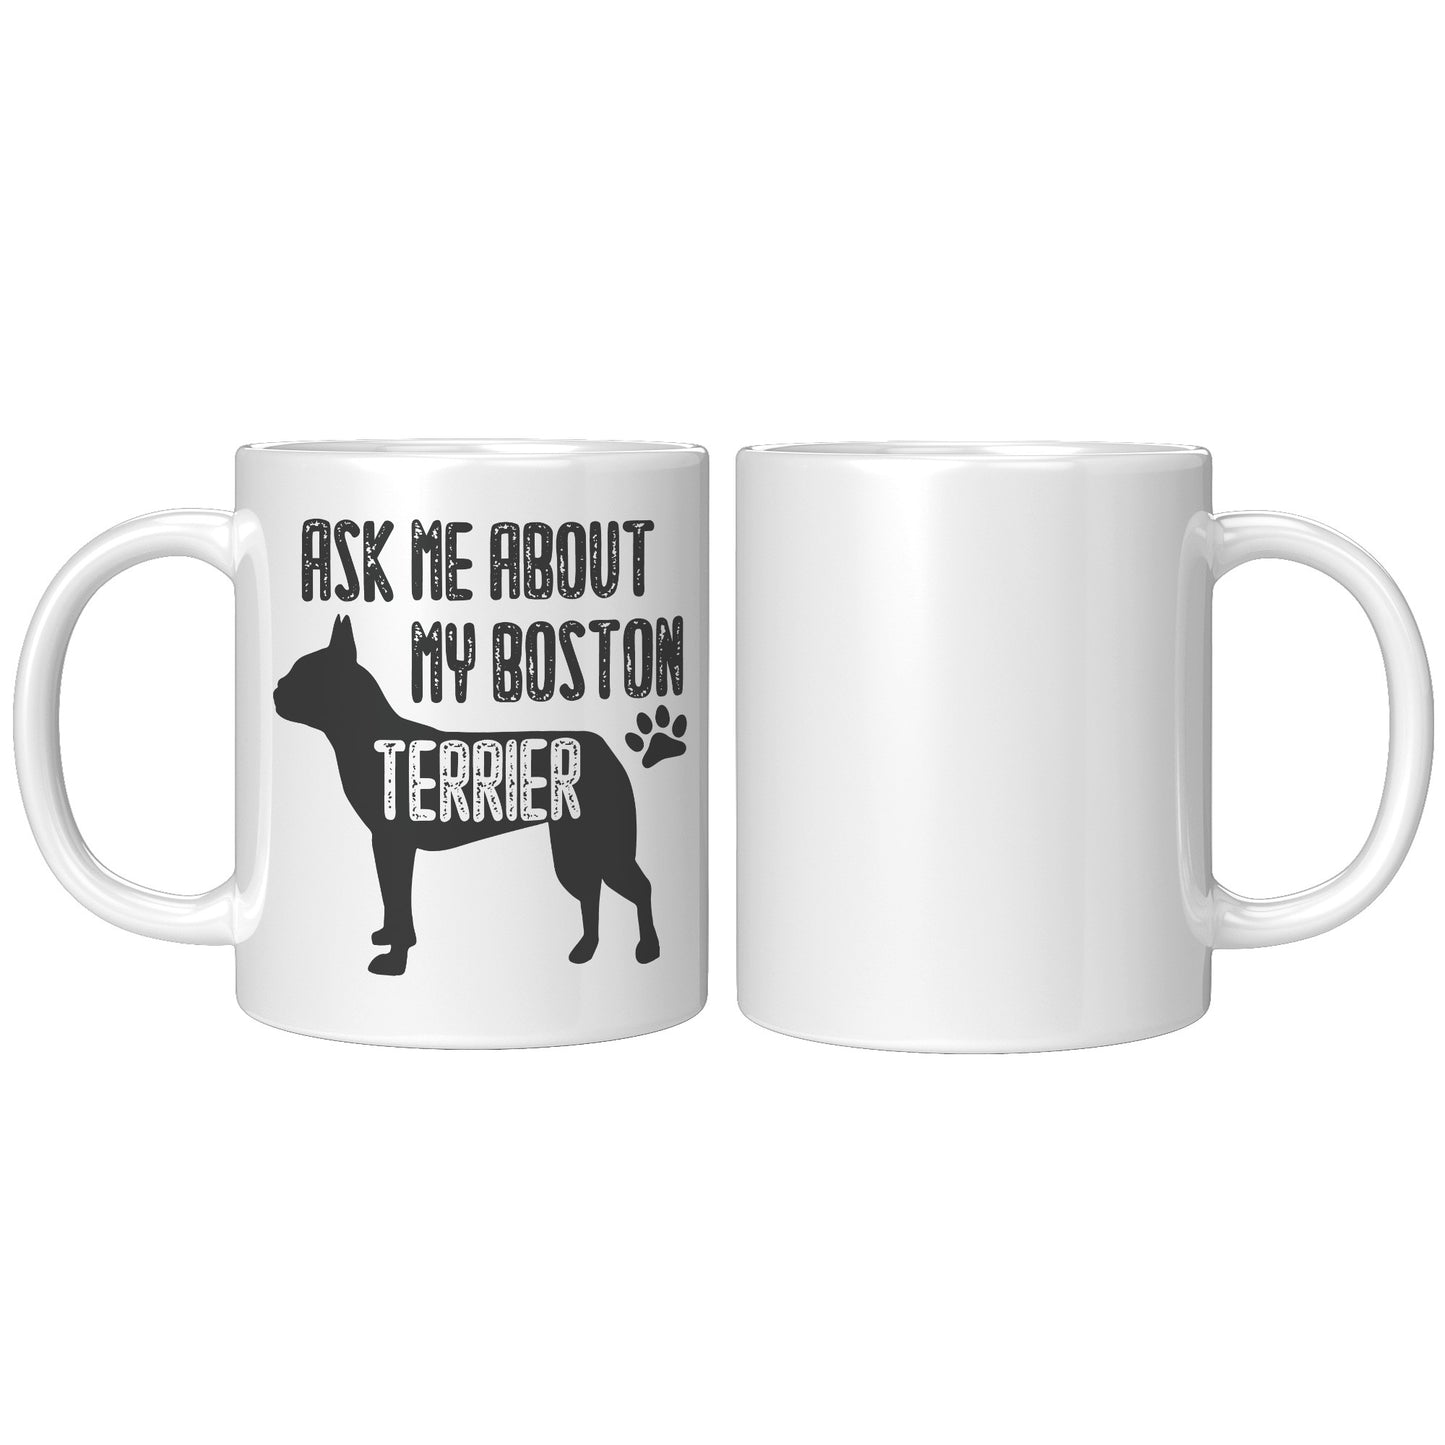 Banjo -Mug for Boston Terrier lovers